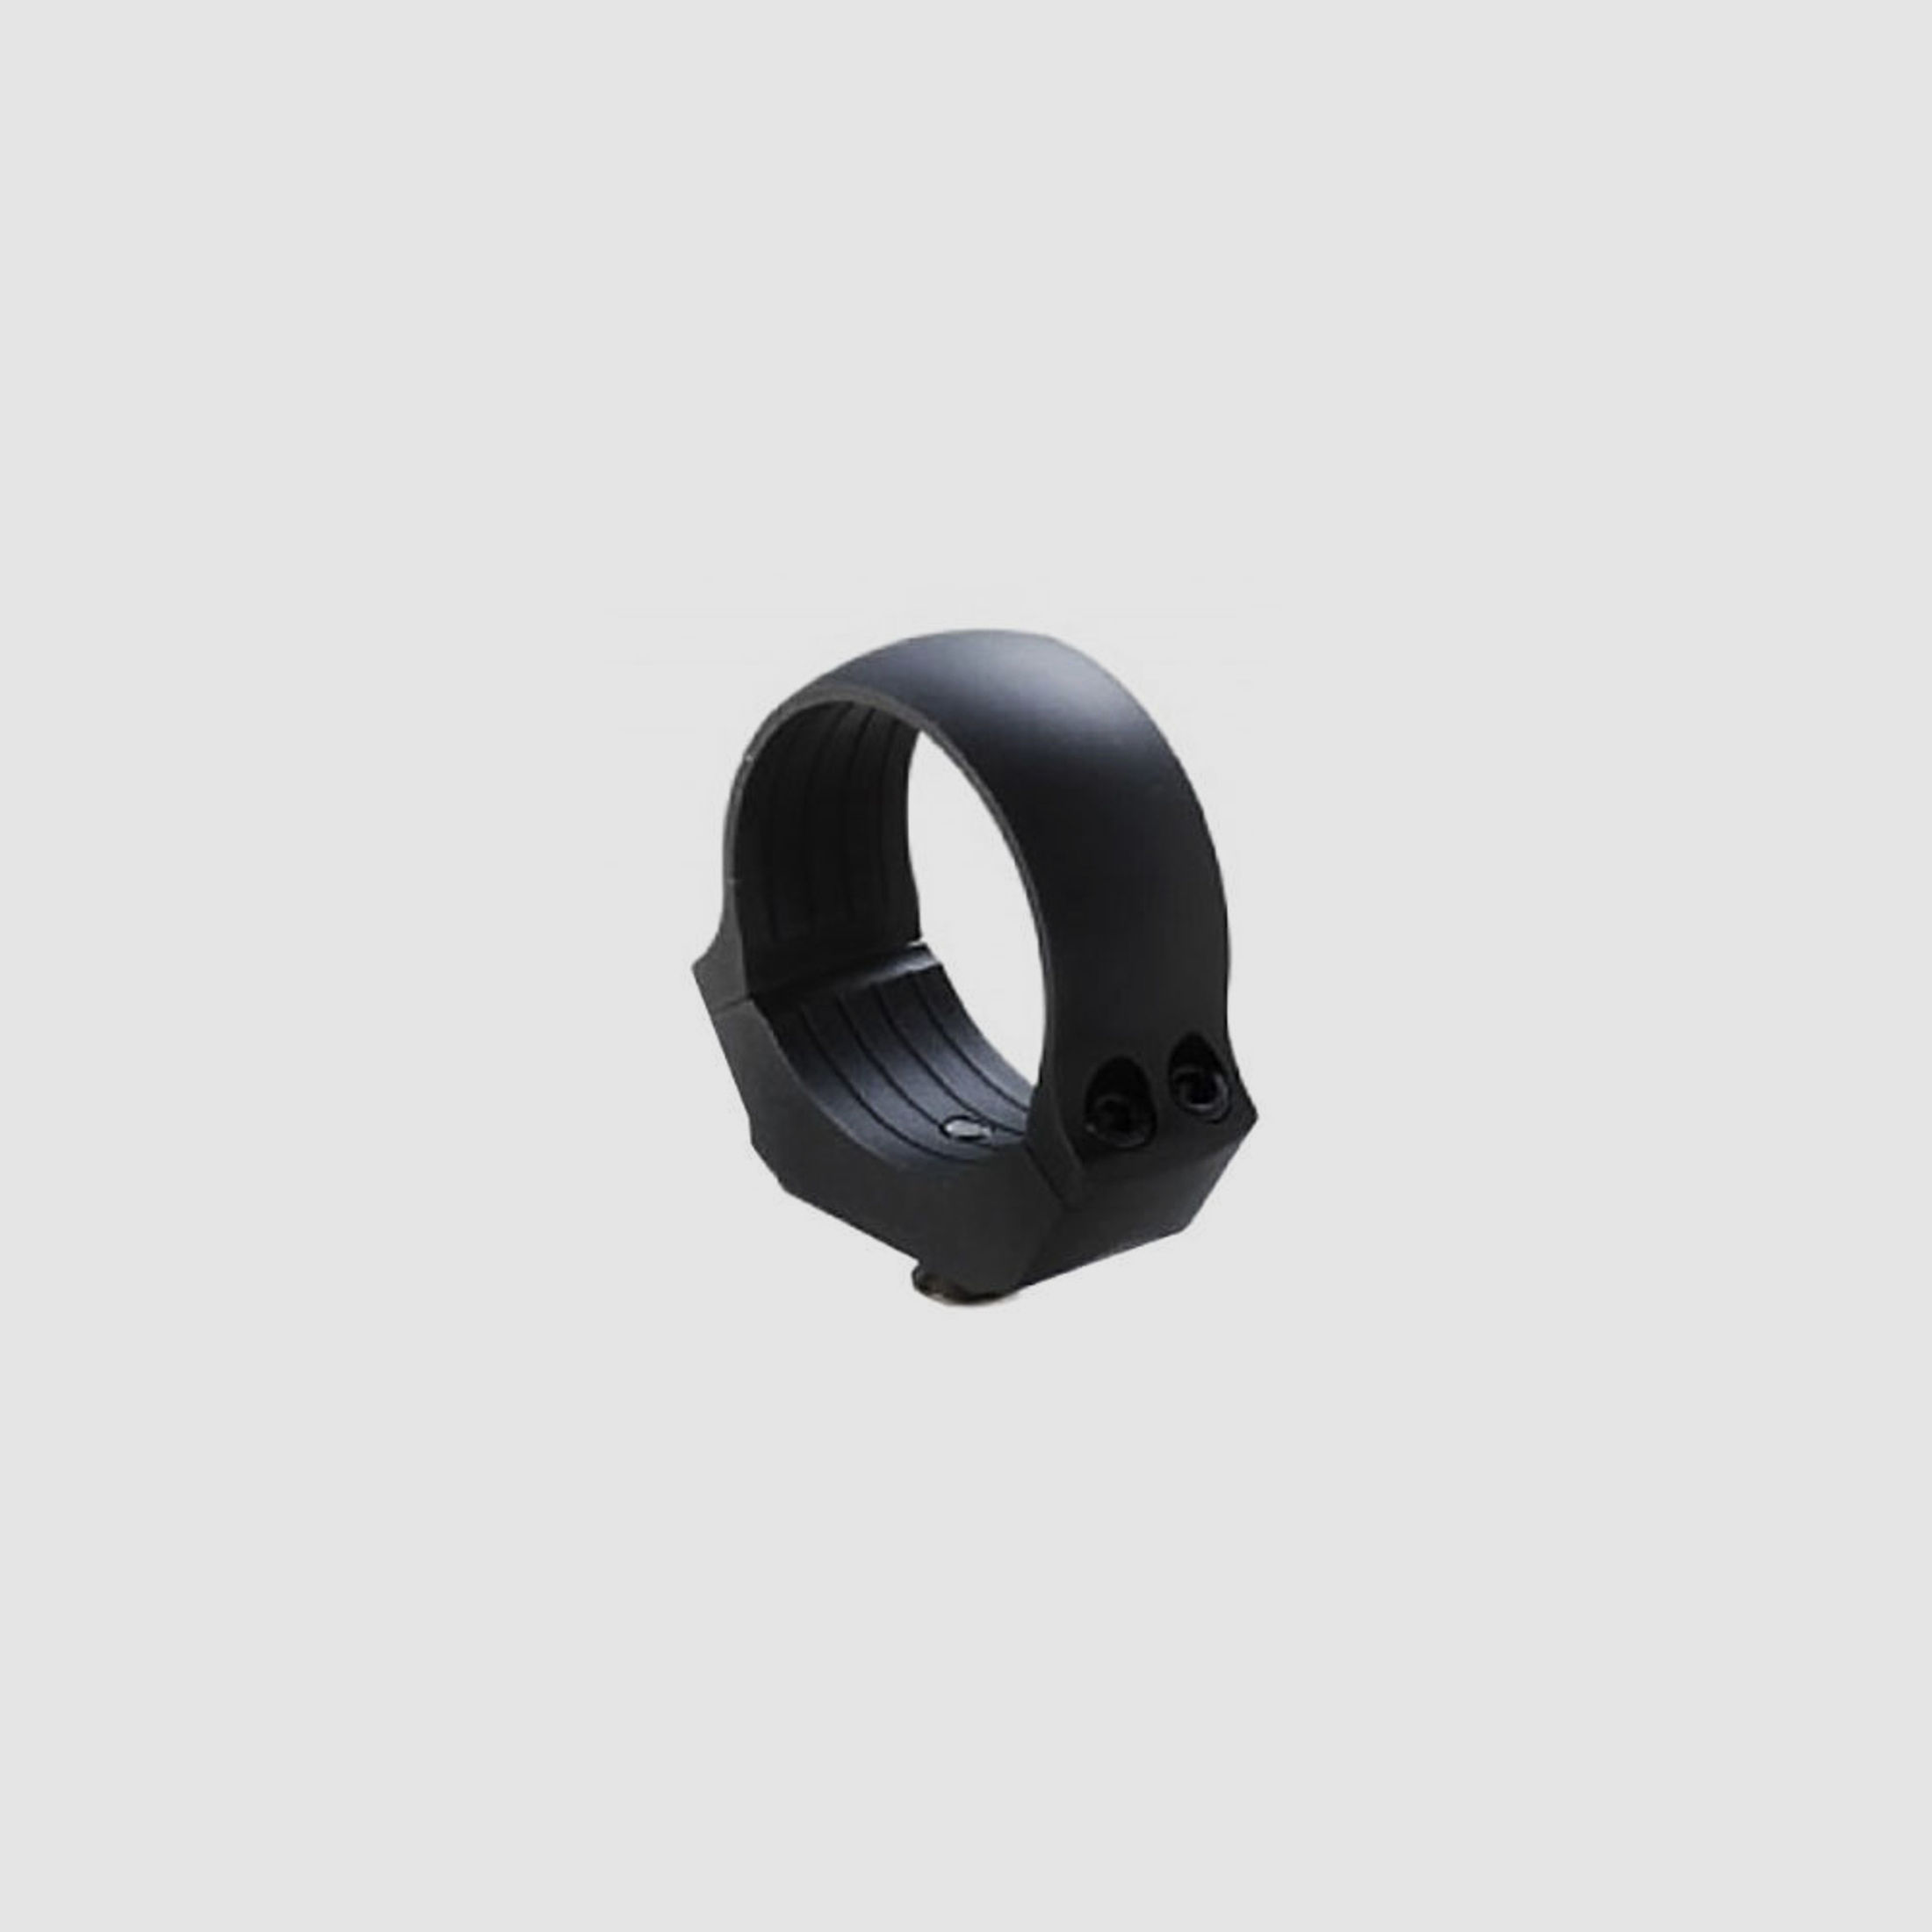 Dentler Dural Ring Montagering 30mm Durchmesser 6,5mm Höhe